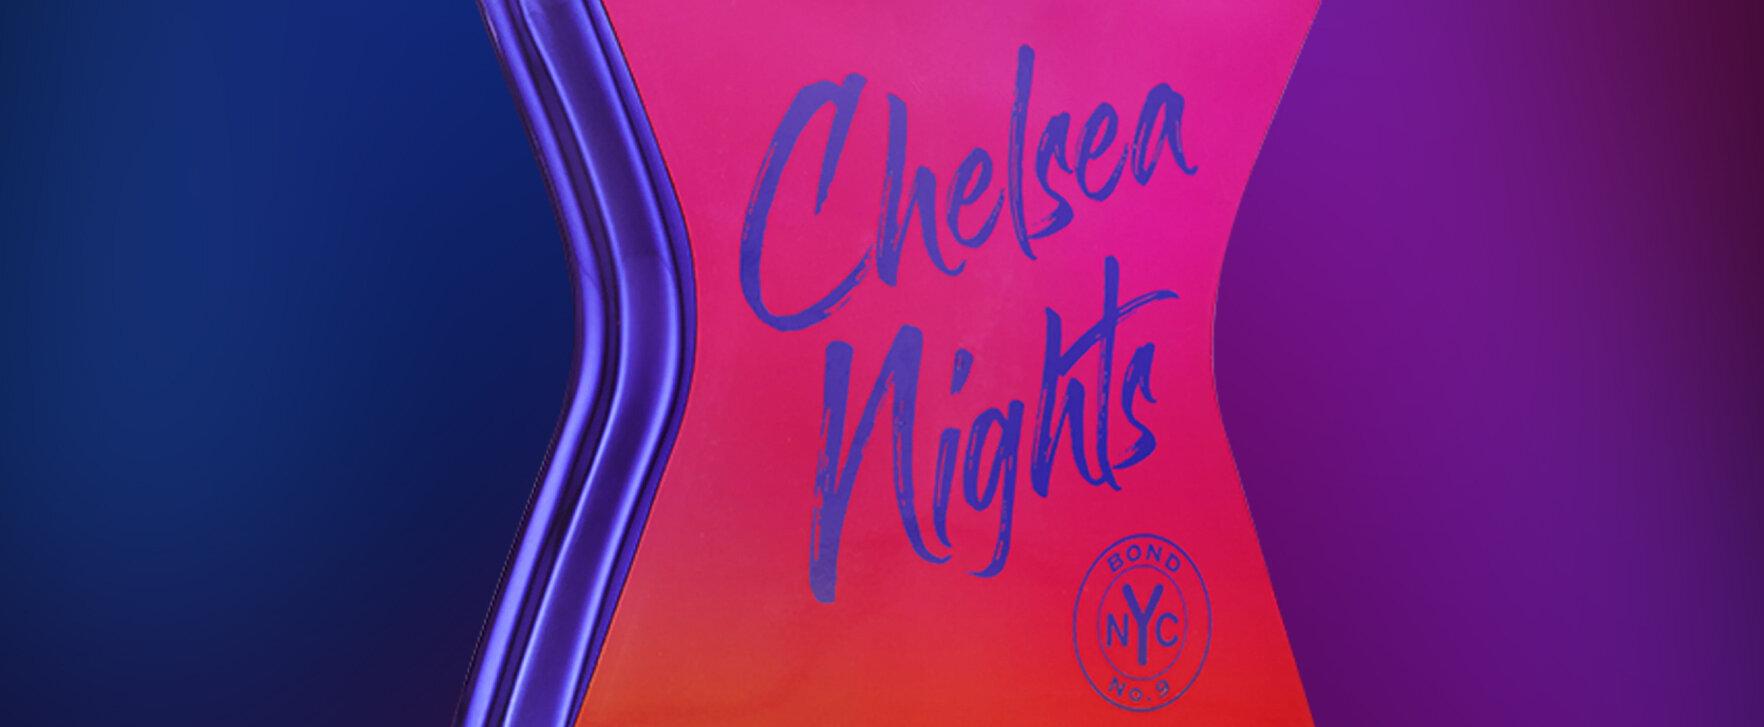 „Chelsea Nights“ - neuer Duft des New Yorker Nischenlabels Bond No. 9